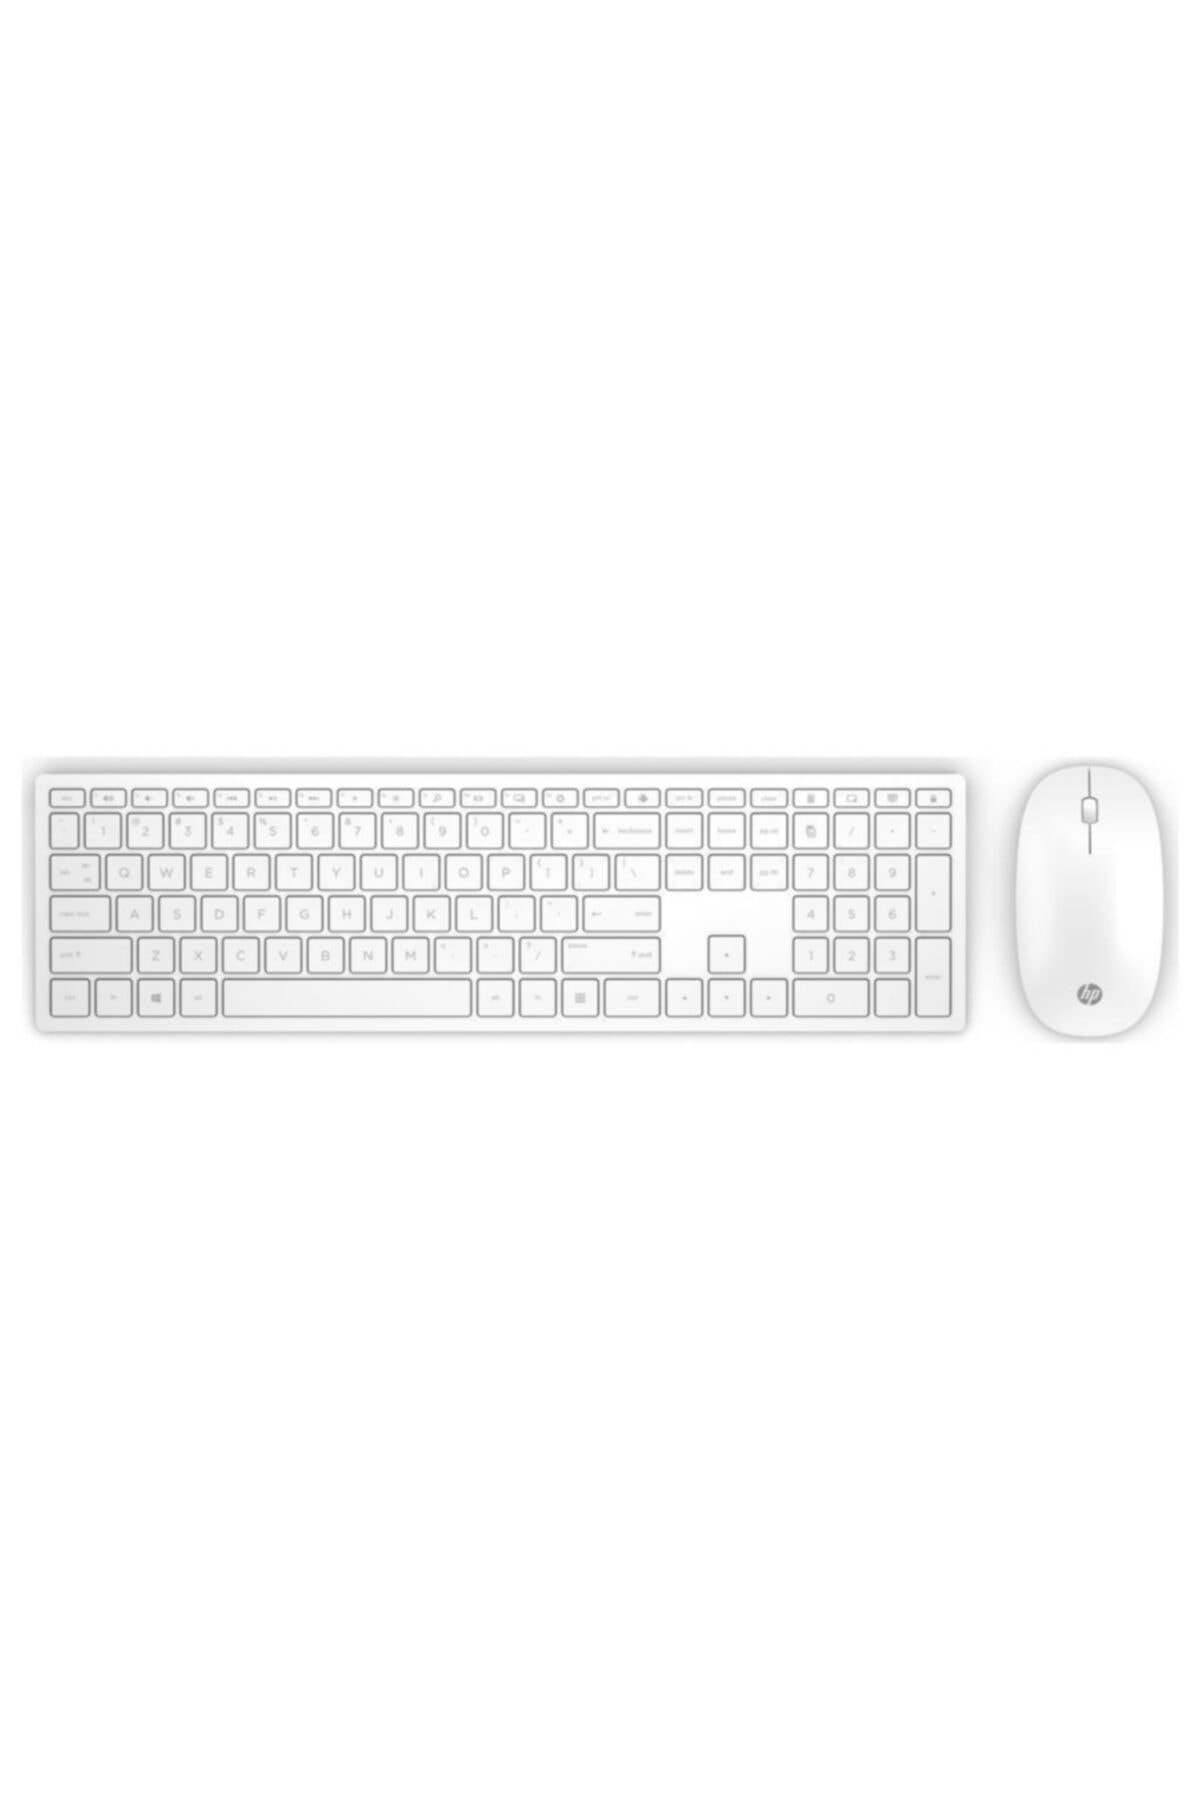 rakım ~ yan Susteen  HP Pavilion Kablosuz Klavye Mouse 800 Set 4cf00aa Fiyatı, Yorumları -  TRENDYOL